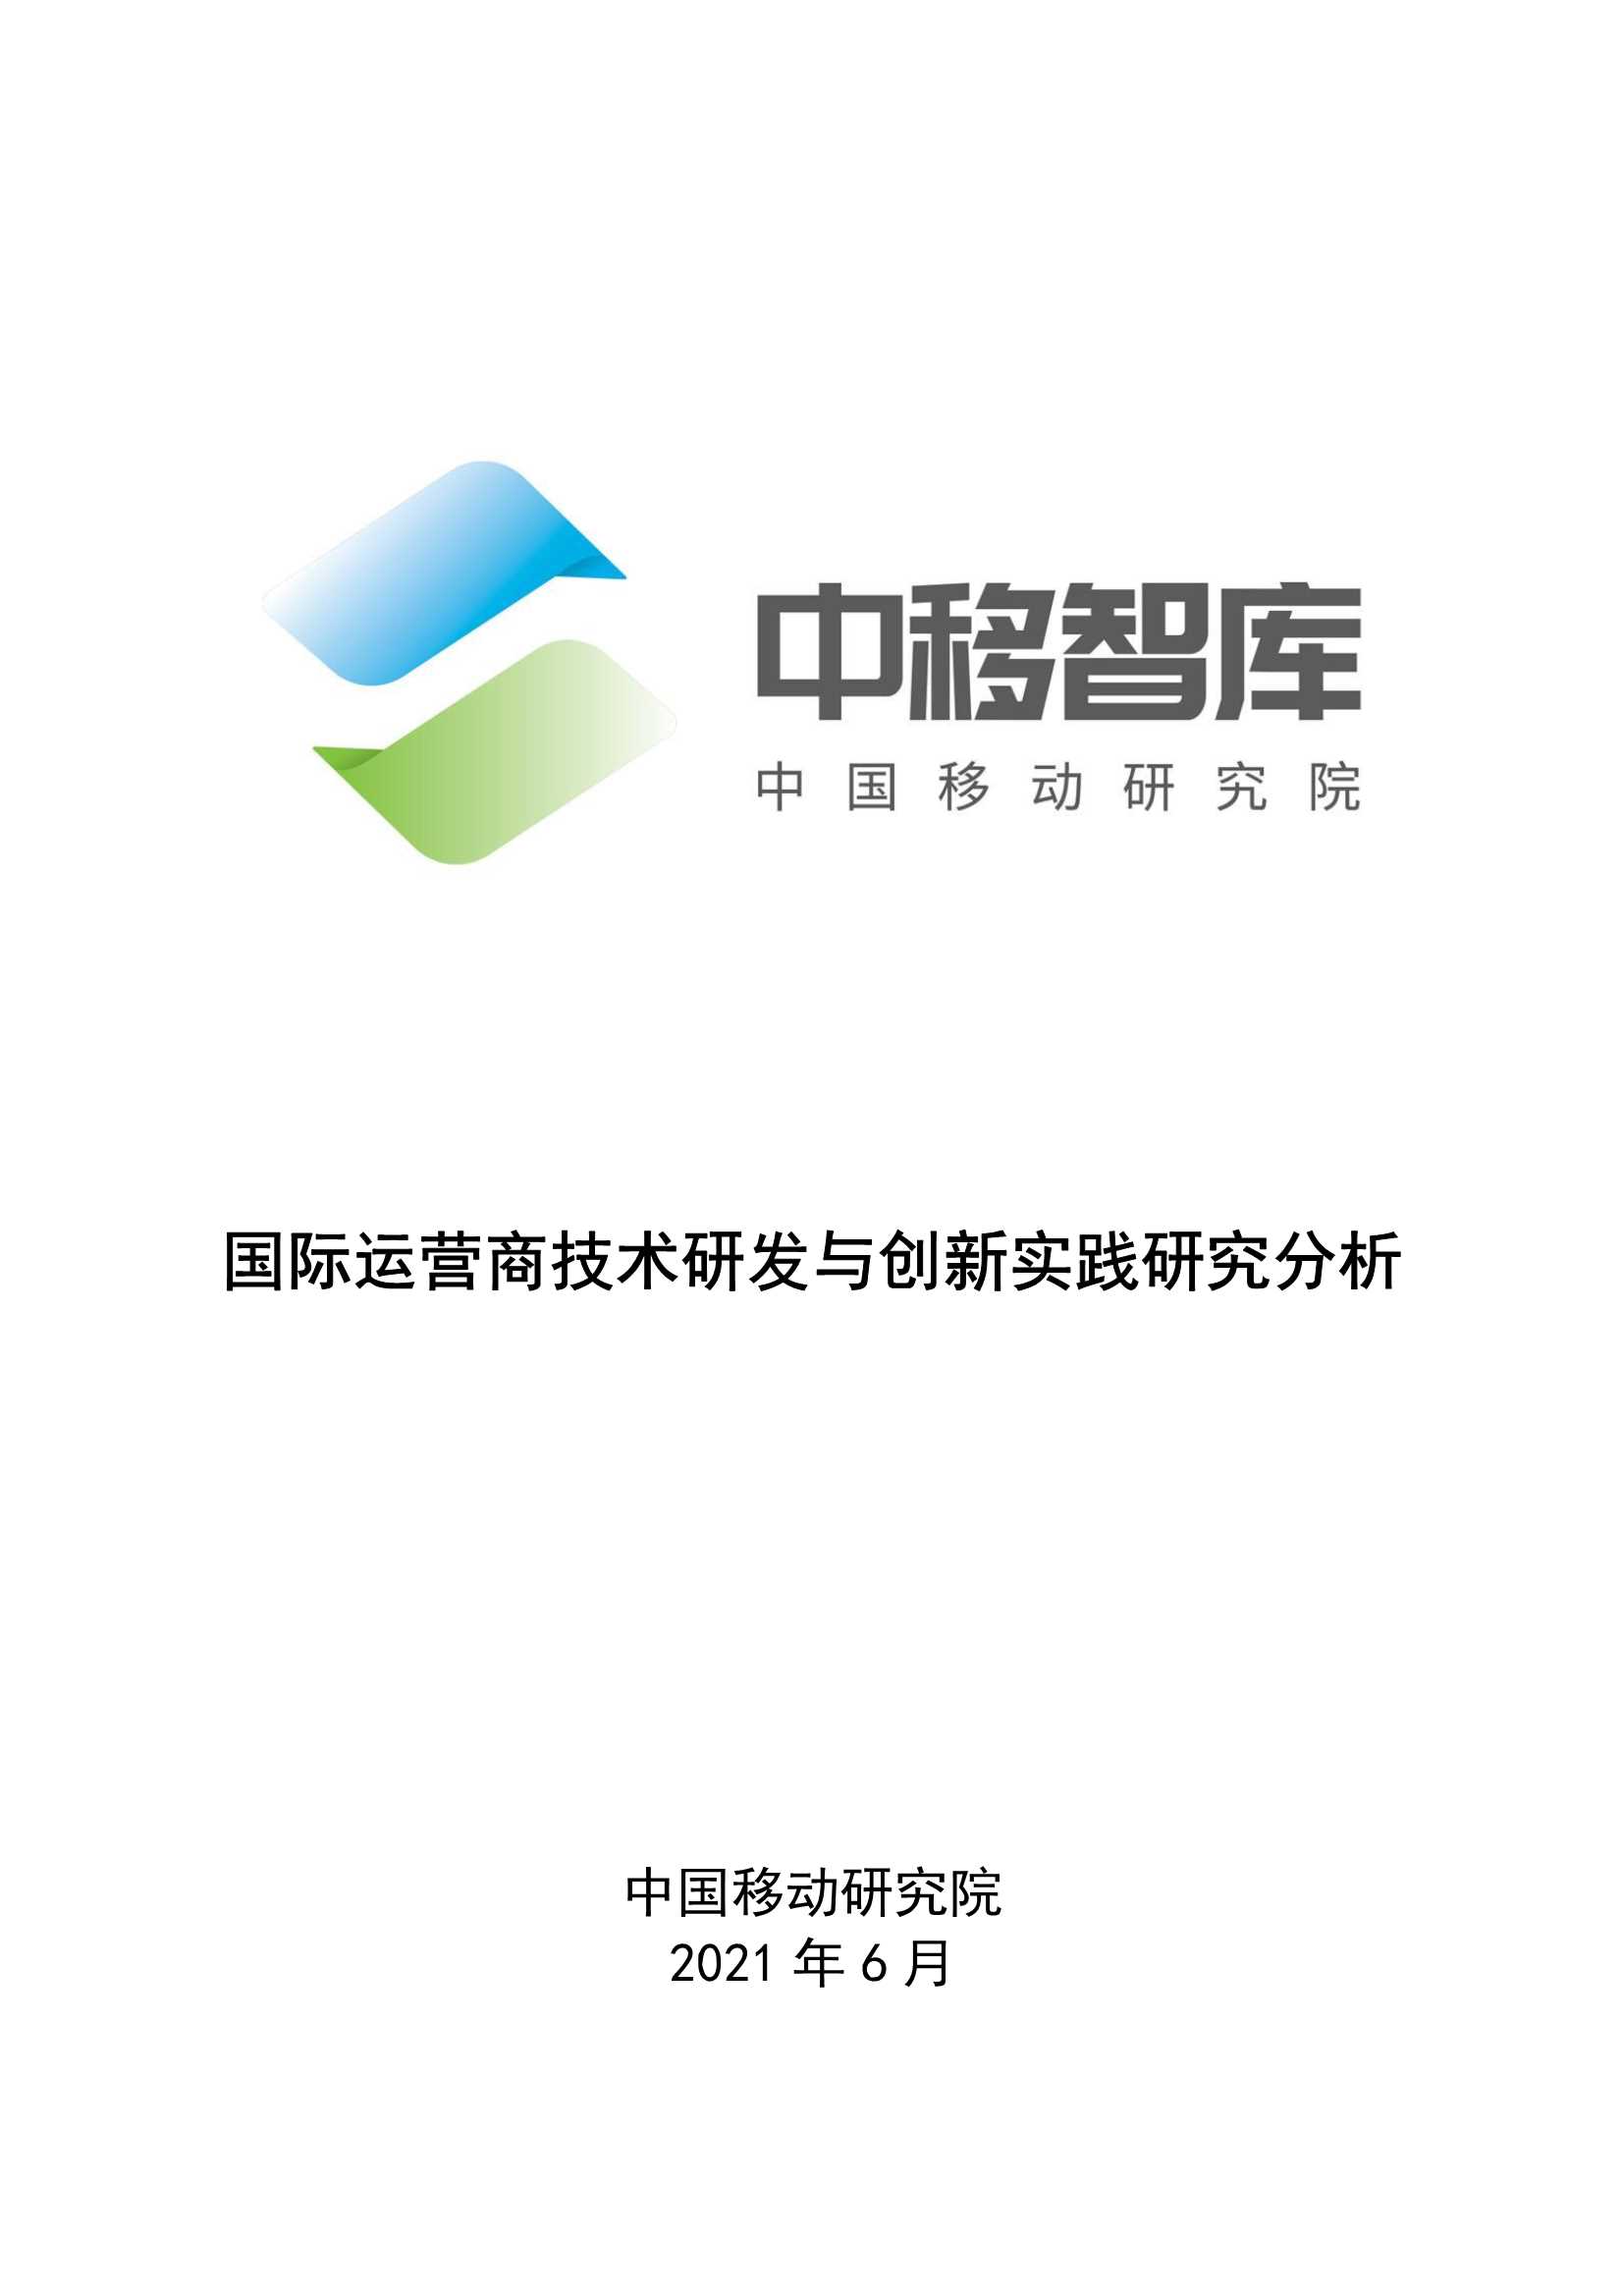 中国移动-国际运营商技术研发与创新实践研究分析-2021.06-18页